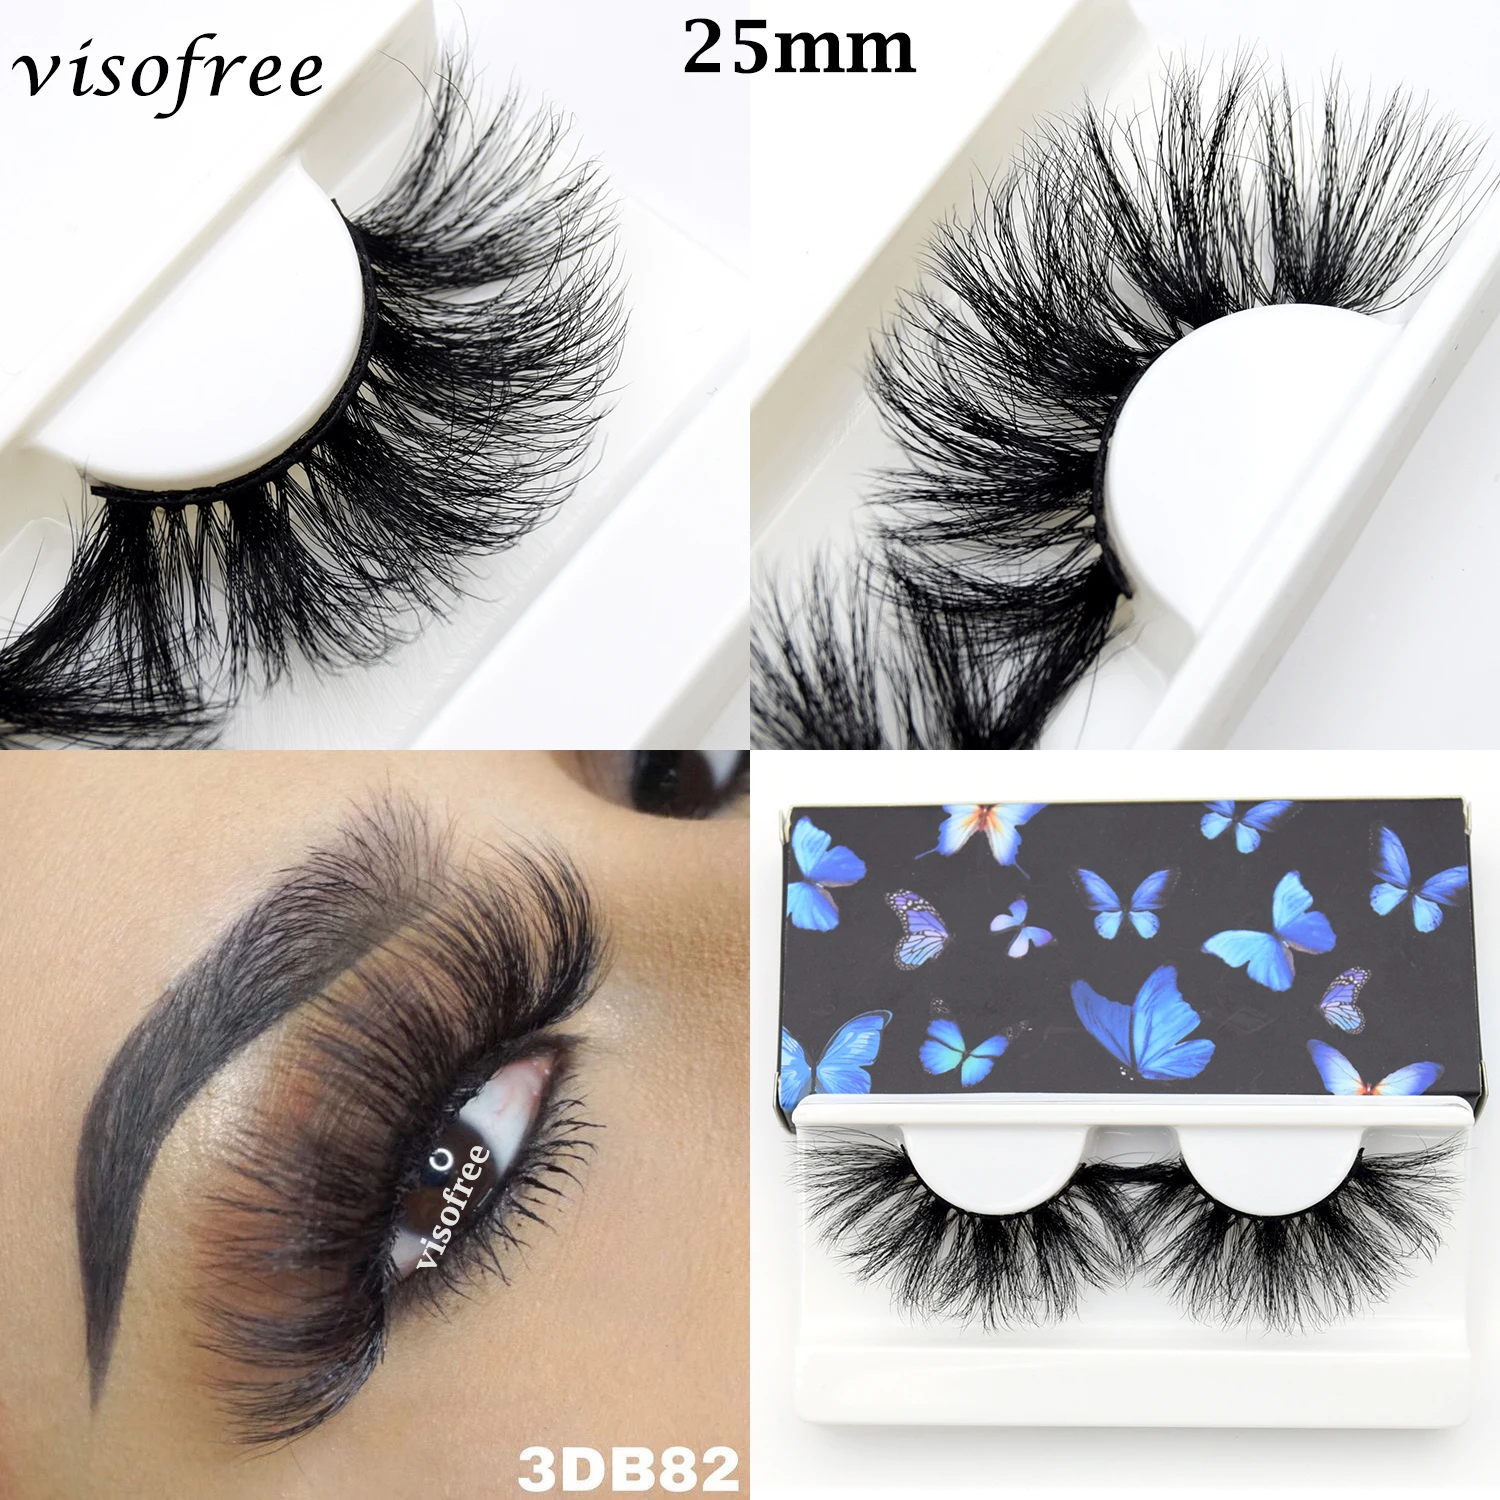 

Visofree 25mm Eyelashes 3D Mink Lashes Natural False Eyelashes Dramatic Fluffy Soft Wispy Volume Cross Reusable Eyelash MaKeup